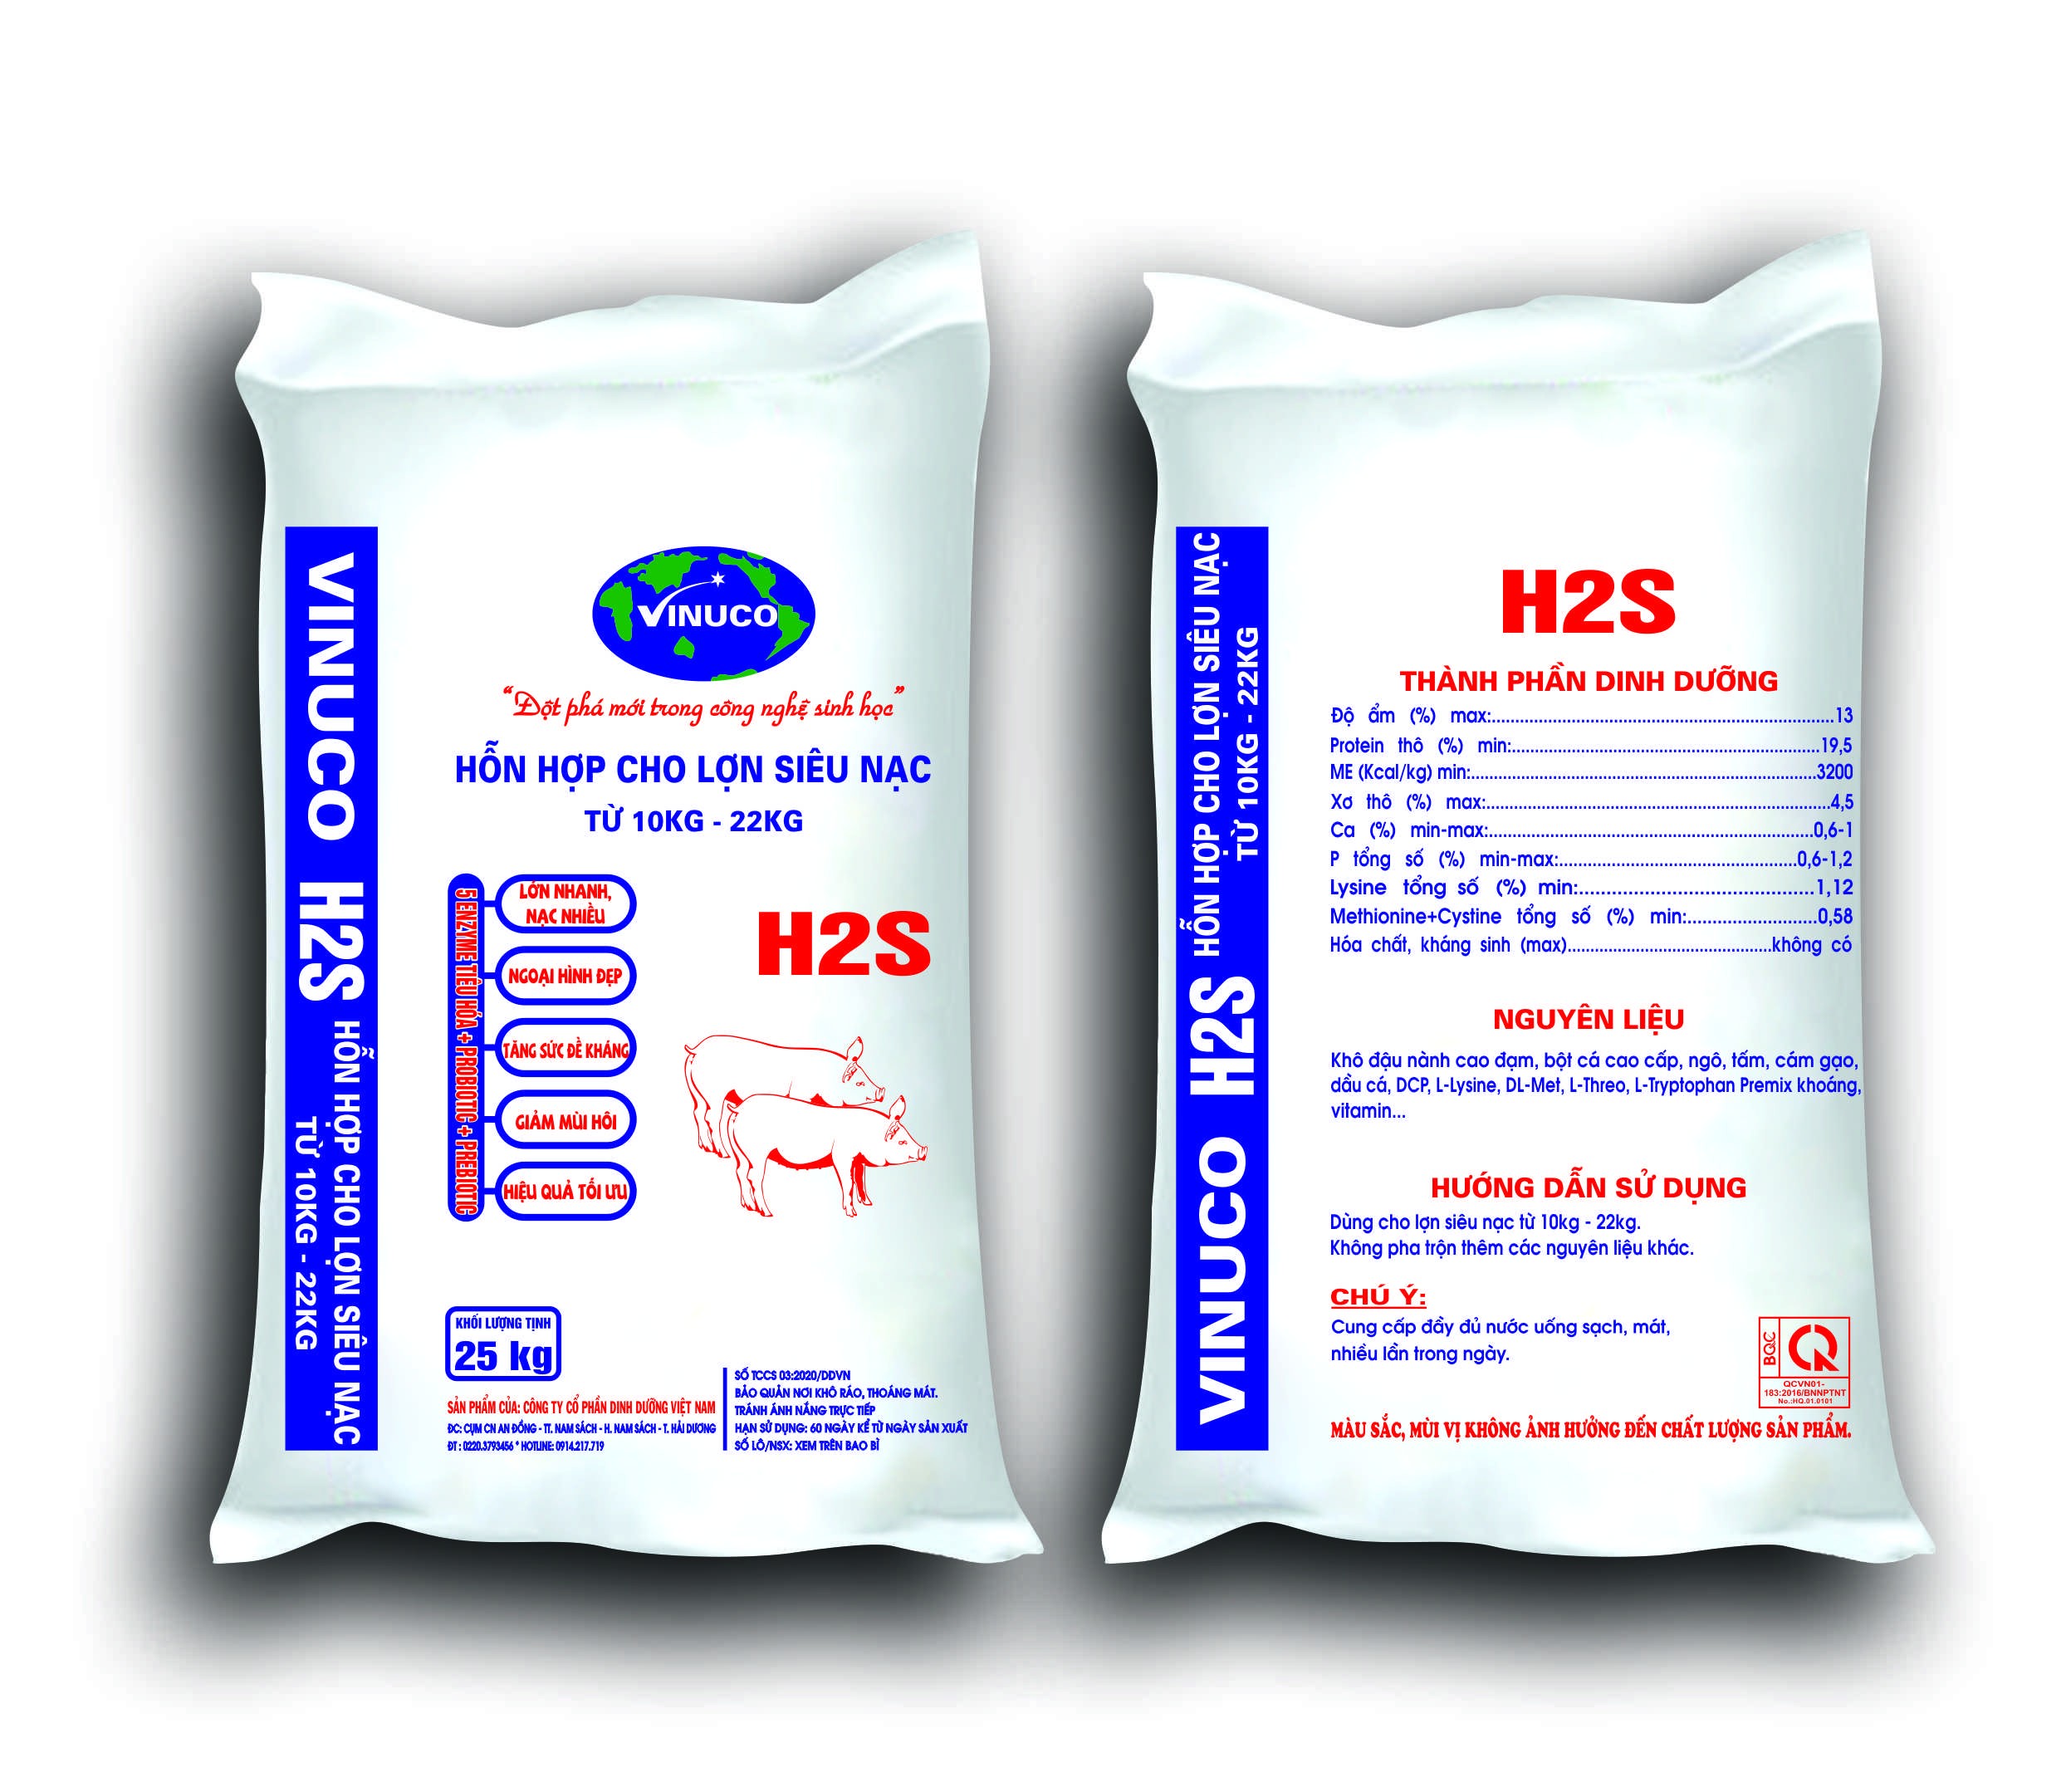 H2S - Hỗn hợp cho lơn siêu nạc (từ 10kg - 22kg)